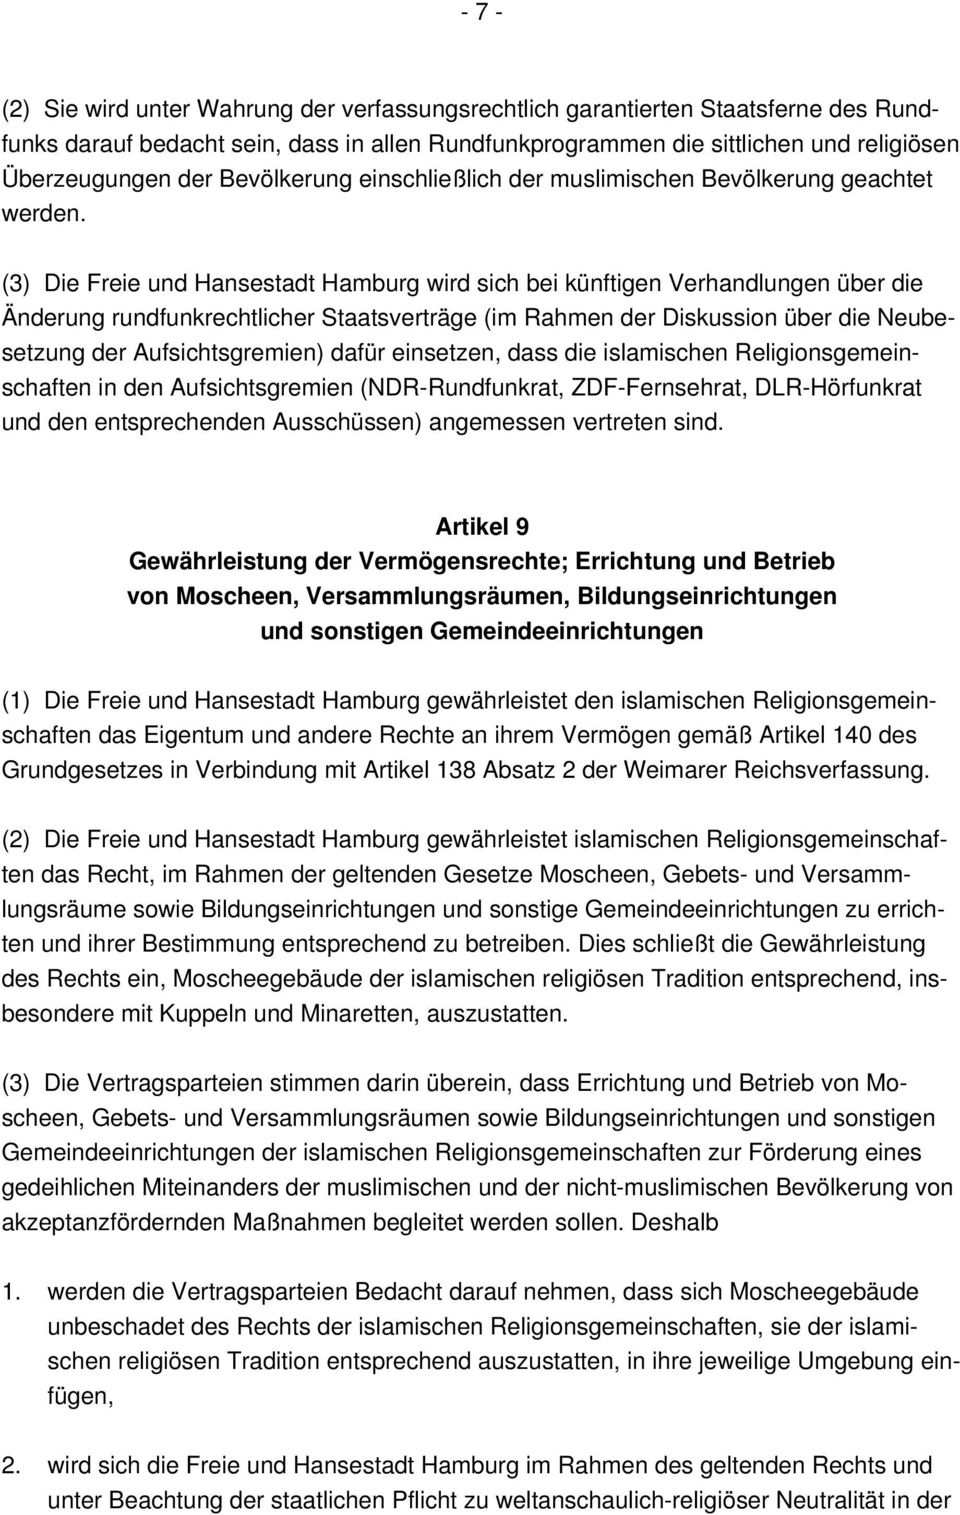 (3) Die Freie und Hansestadt Hamburg wird sich bei künftigen Verhandlungen über die Änderung rundfunkrechtlicher Staatsverträge (im Rahmen der Diskussion über die Neubesetzung der Aufsichtsgremien)